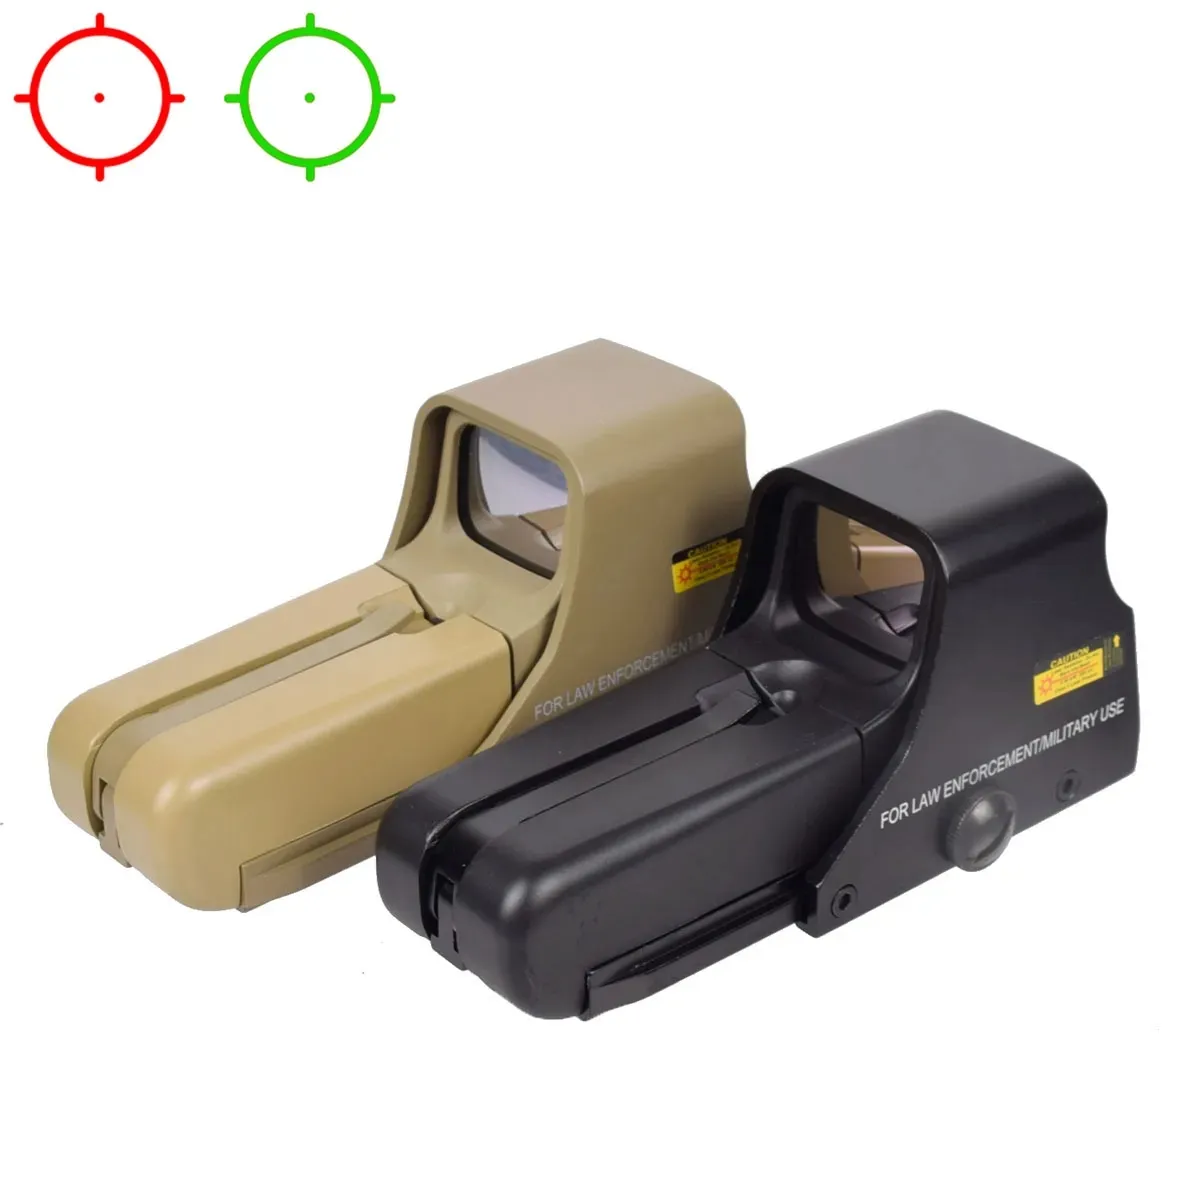 551 552 553 Holografik Yeşil Kırmızı Nokta Optik Optik Gece Görüş Tüfek Kapsamı 20mm HK416 AR15-Black için